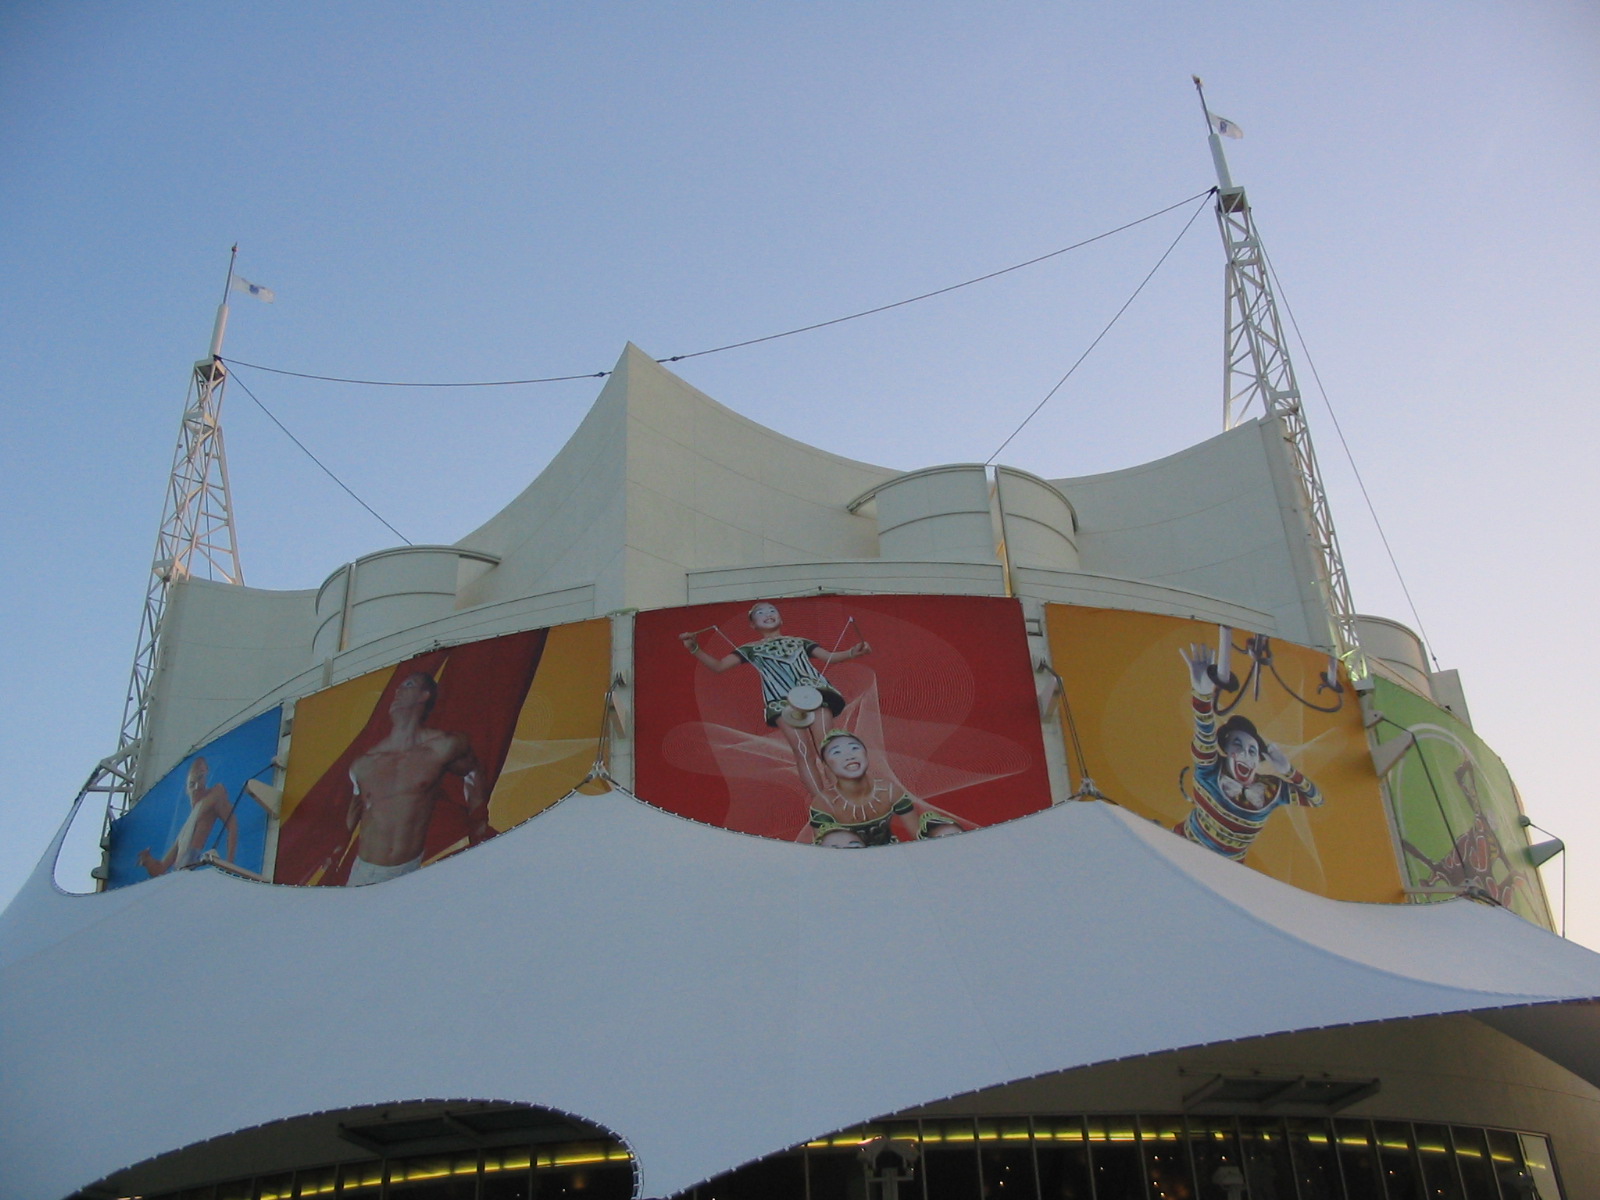 Downtown Disney - Cirque du Soleil La Nouba